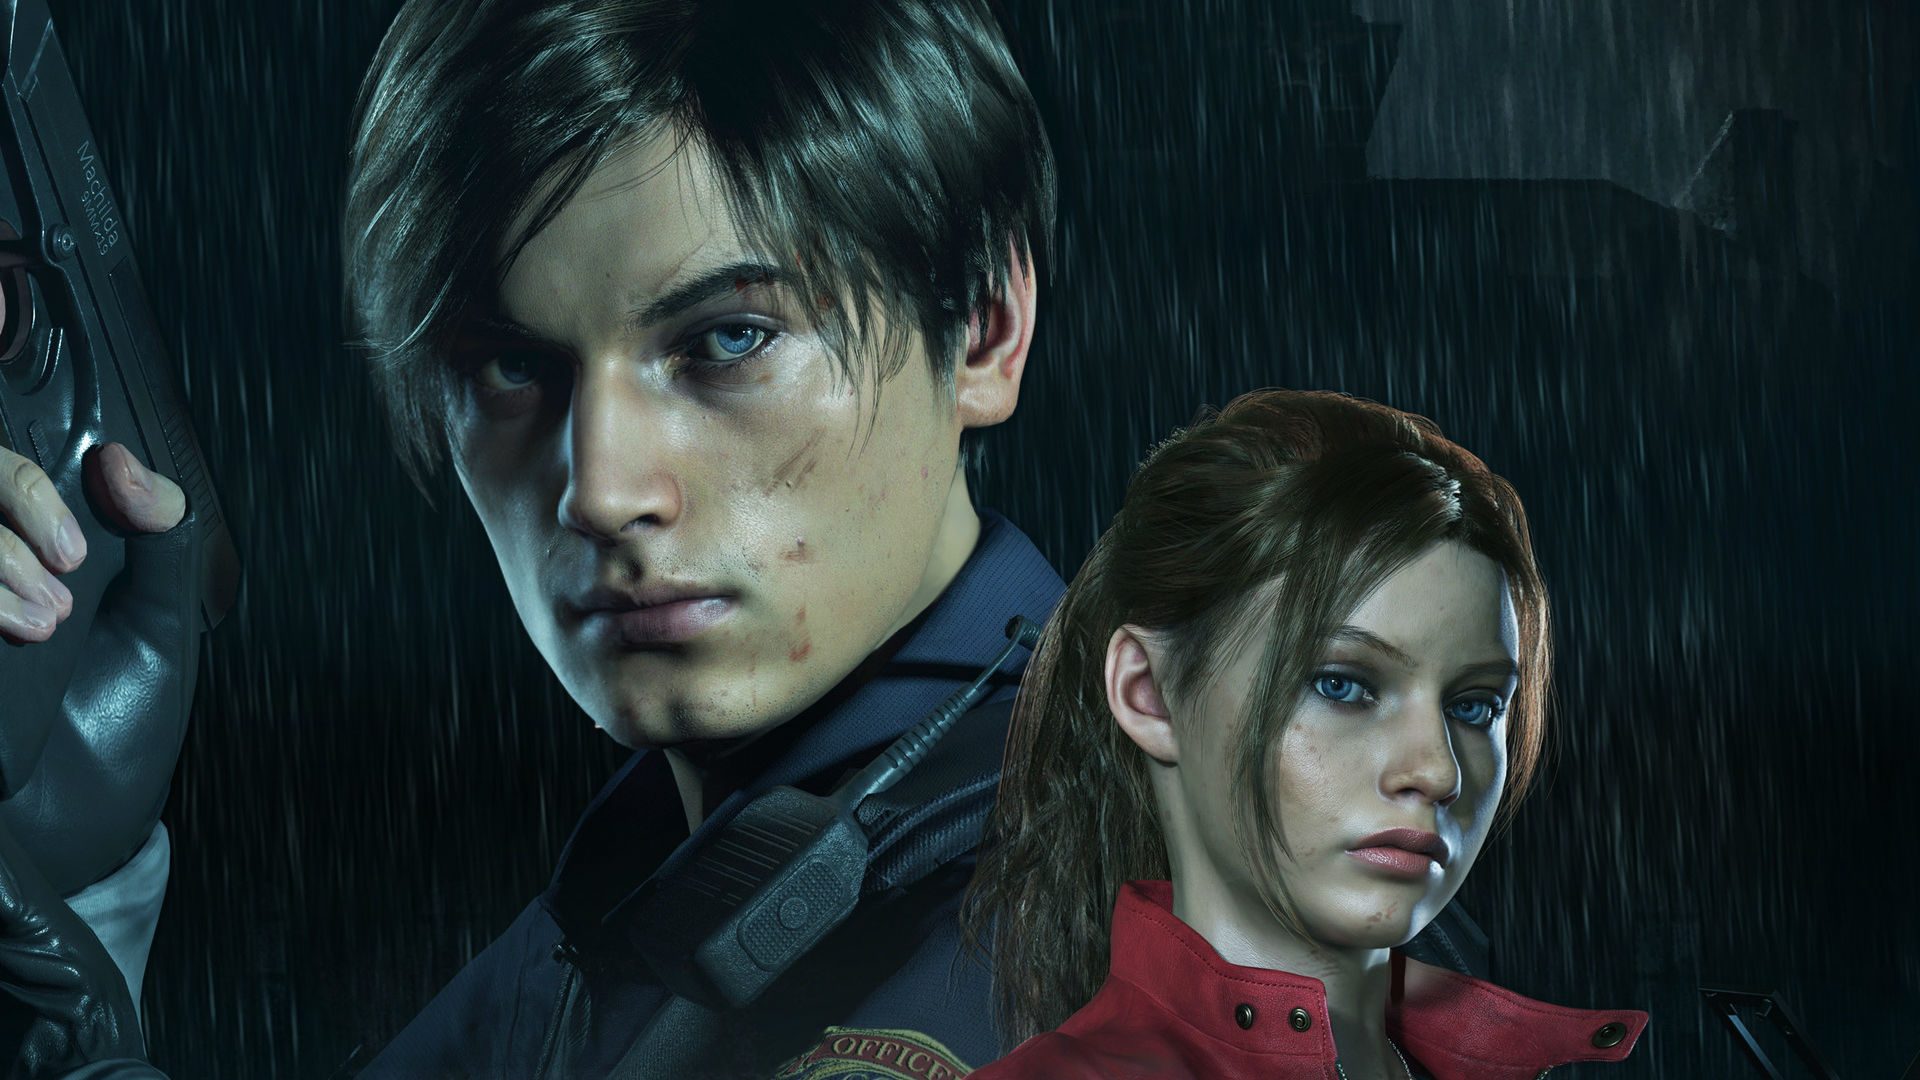 Circo Hecho para recordar hará Resident Evil 2 Remake recibirá los trajes y el modelado del juego original  vía DLC - Generacion Xbox